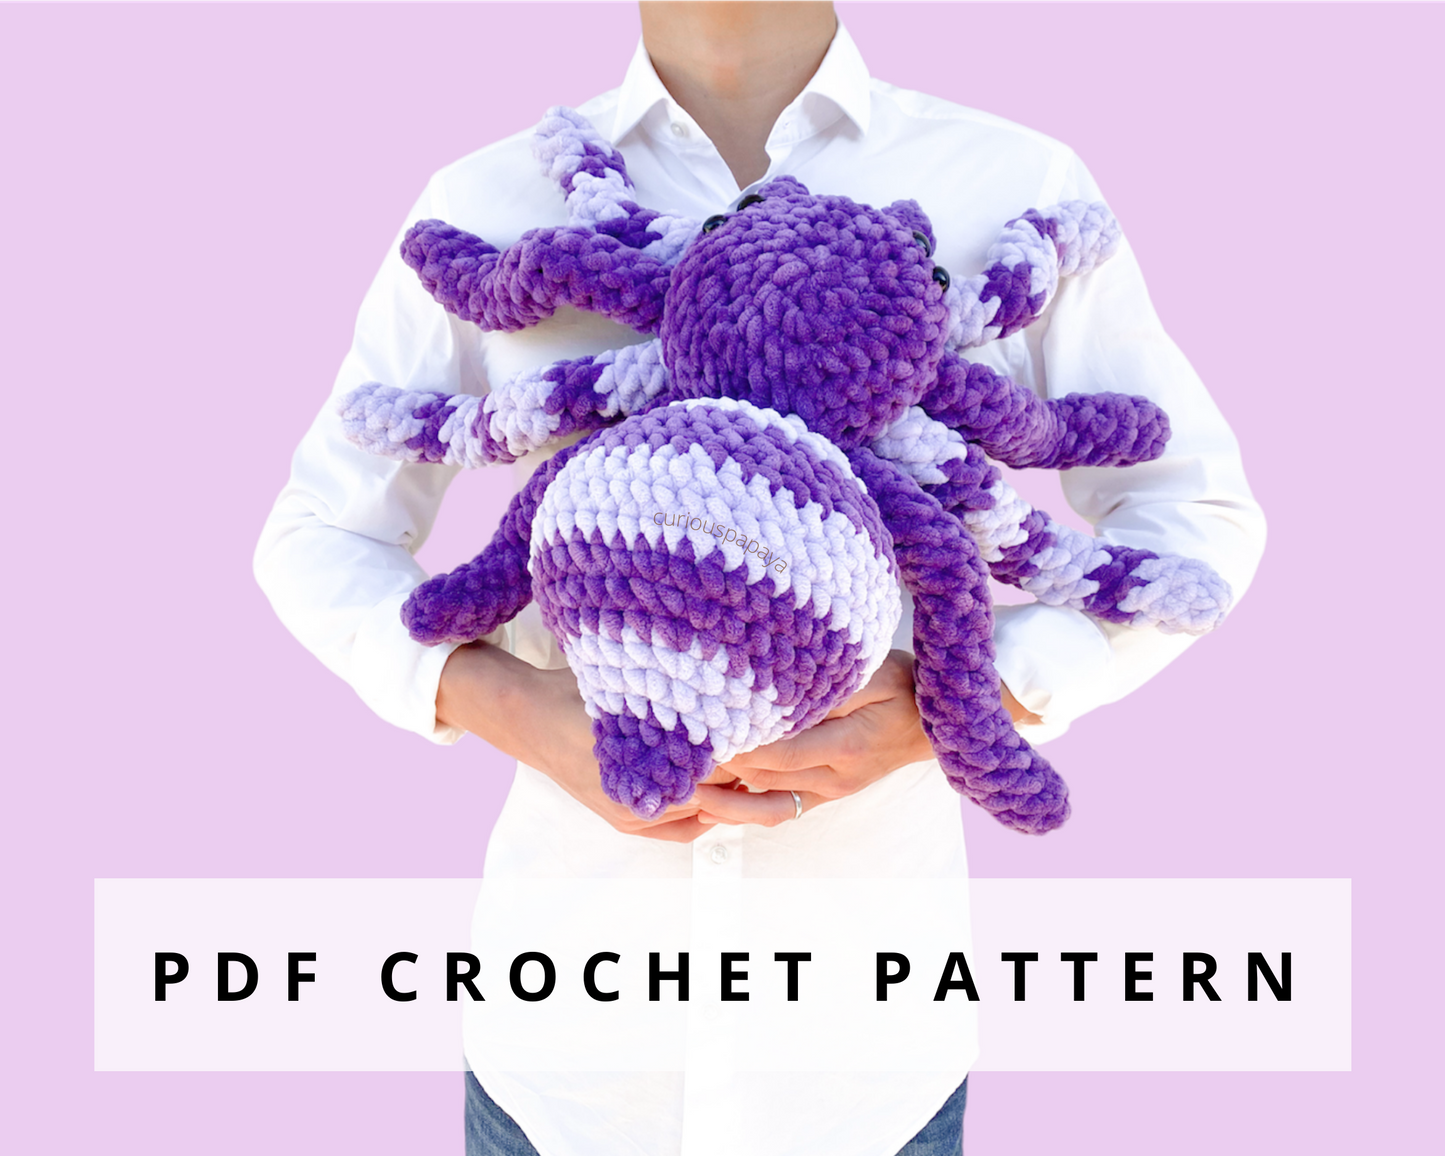 Giant Spider Crochet Pattern